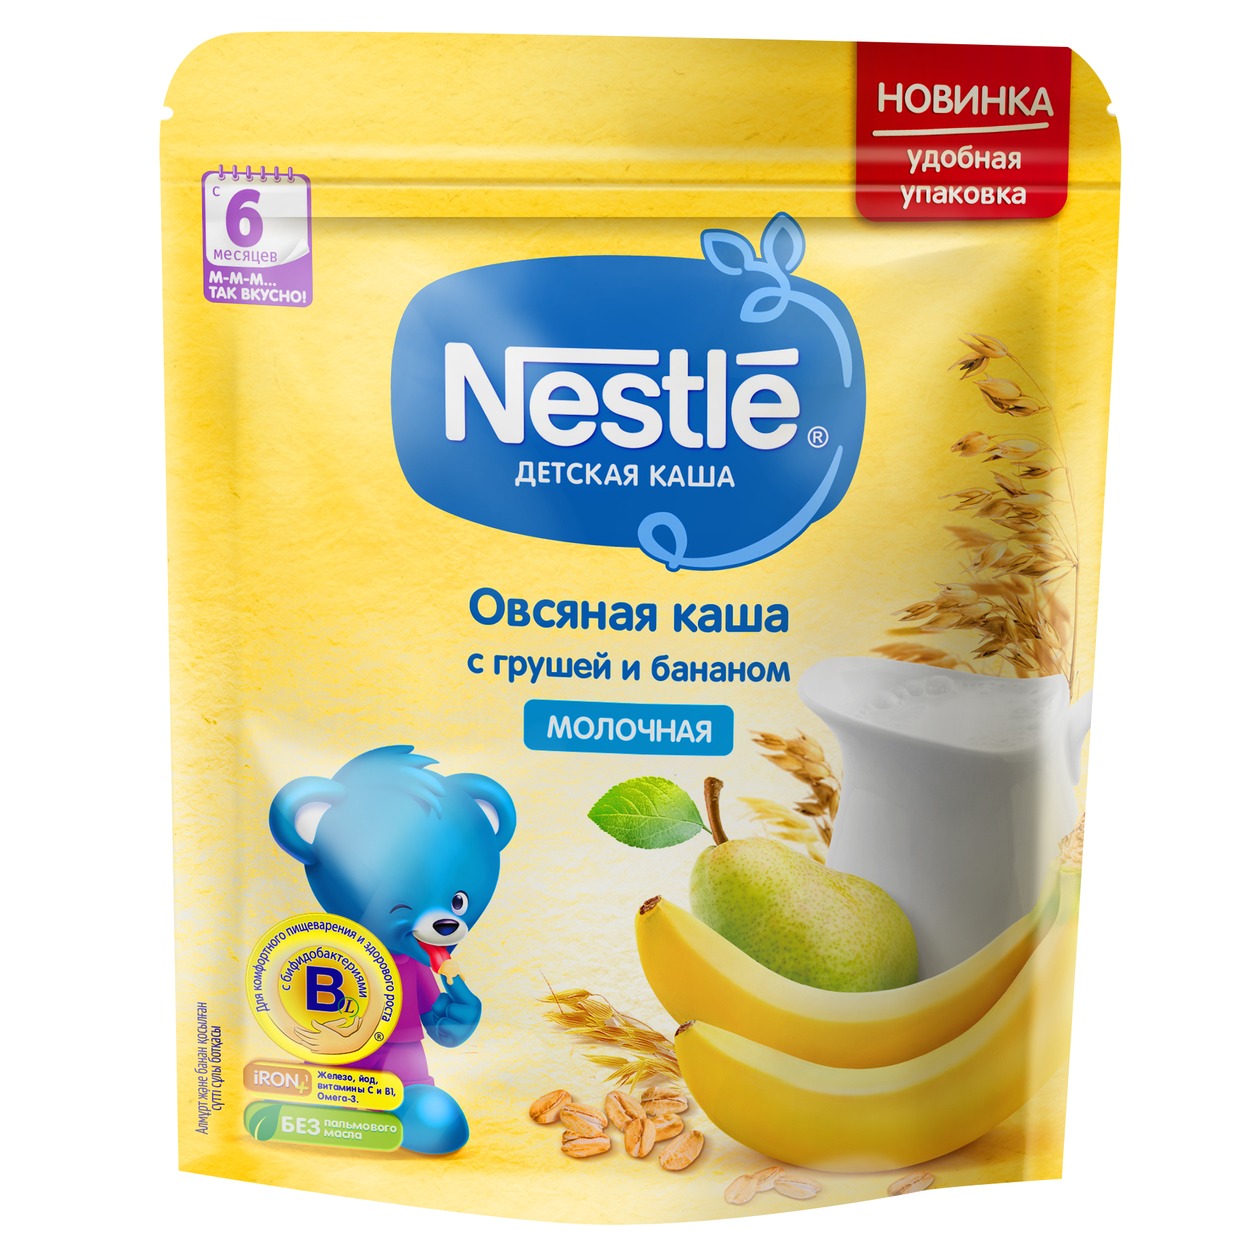 Каша Nestle Молочная овсяная с грушей и бананом 220г по акции в Пятерочке